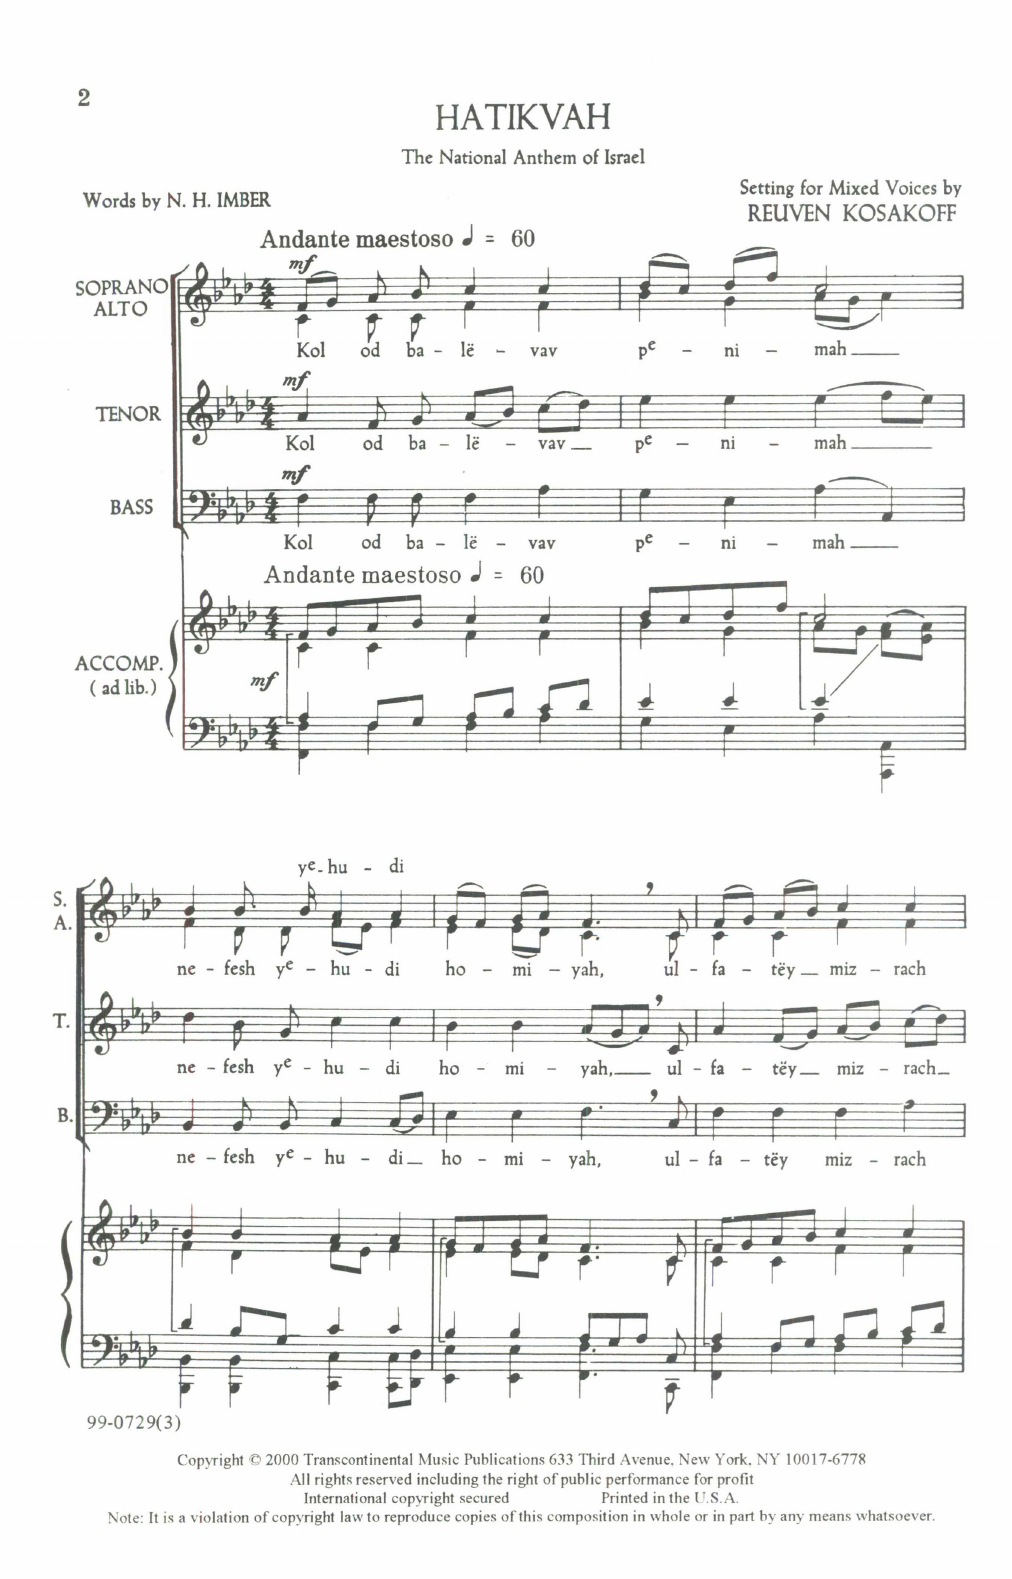 Reuven Kosakoff Hatikvah sheet music notes and chords arranged for SATB Choir